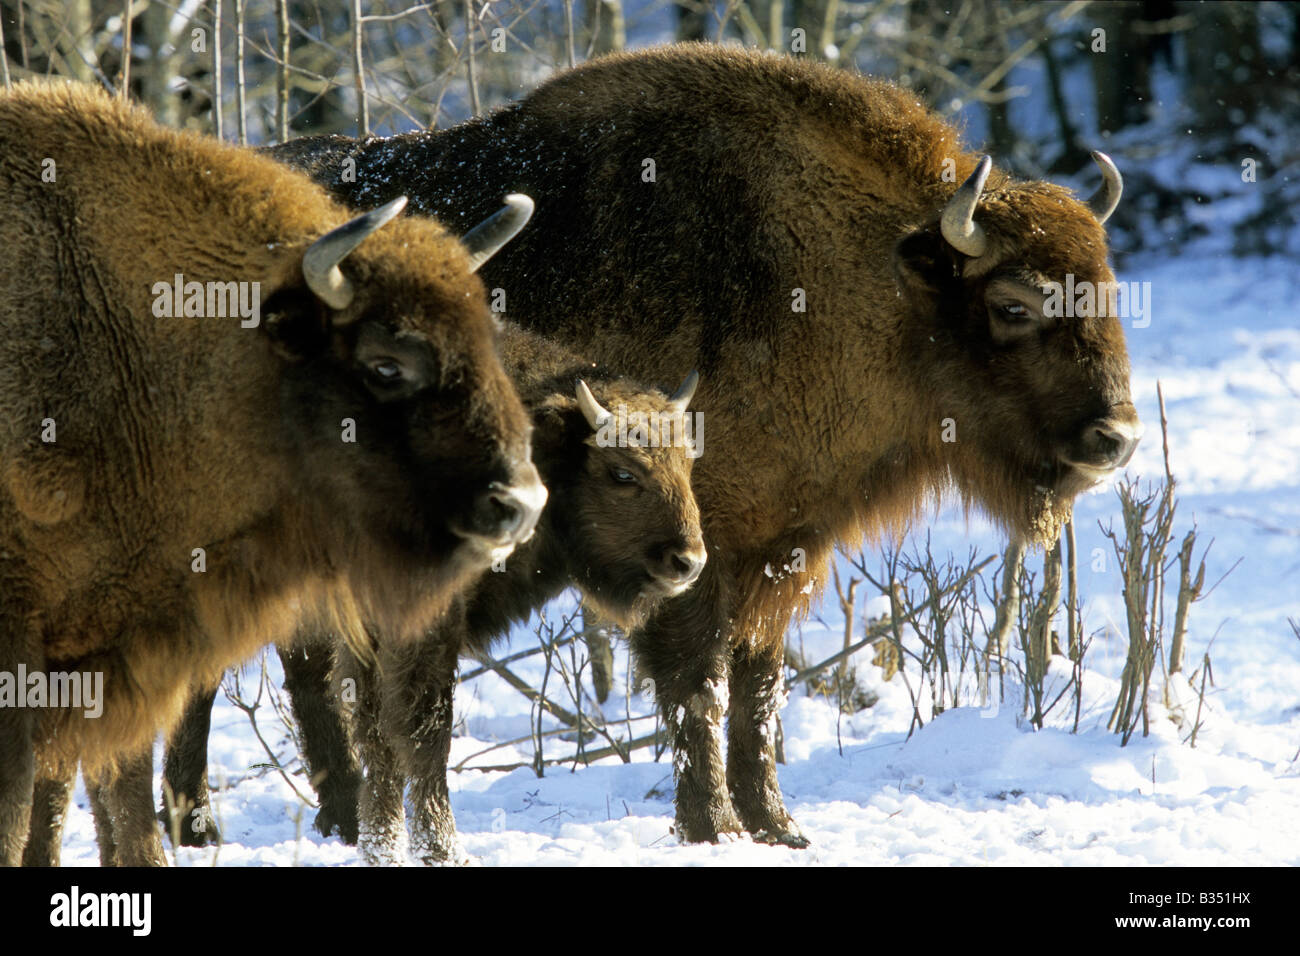 Bison d'Europe (Bison bonasus), deux adultes et un veau sur la neige Banque D'Images